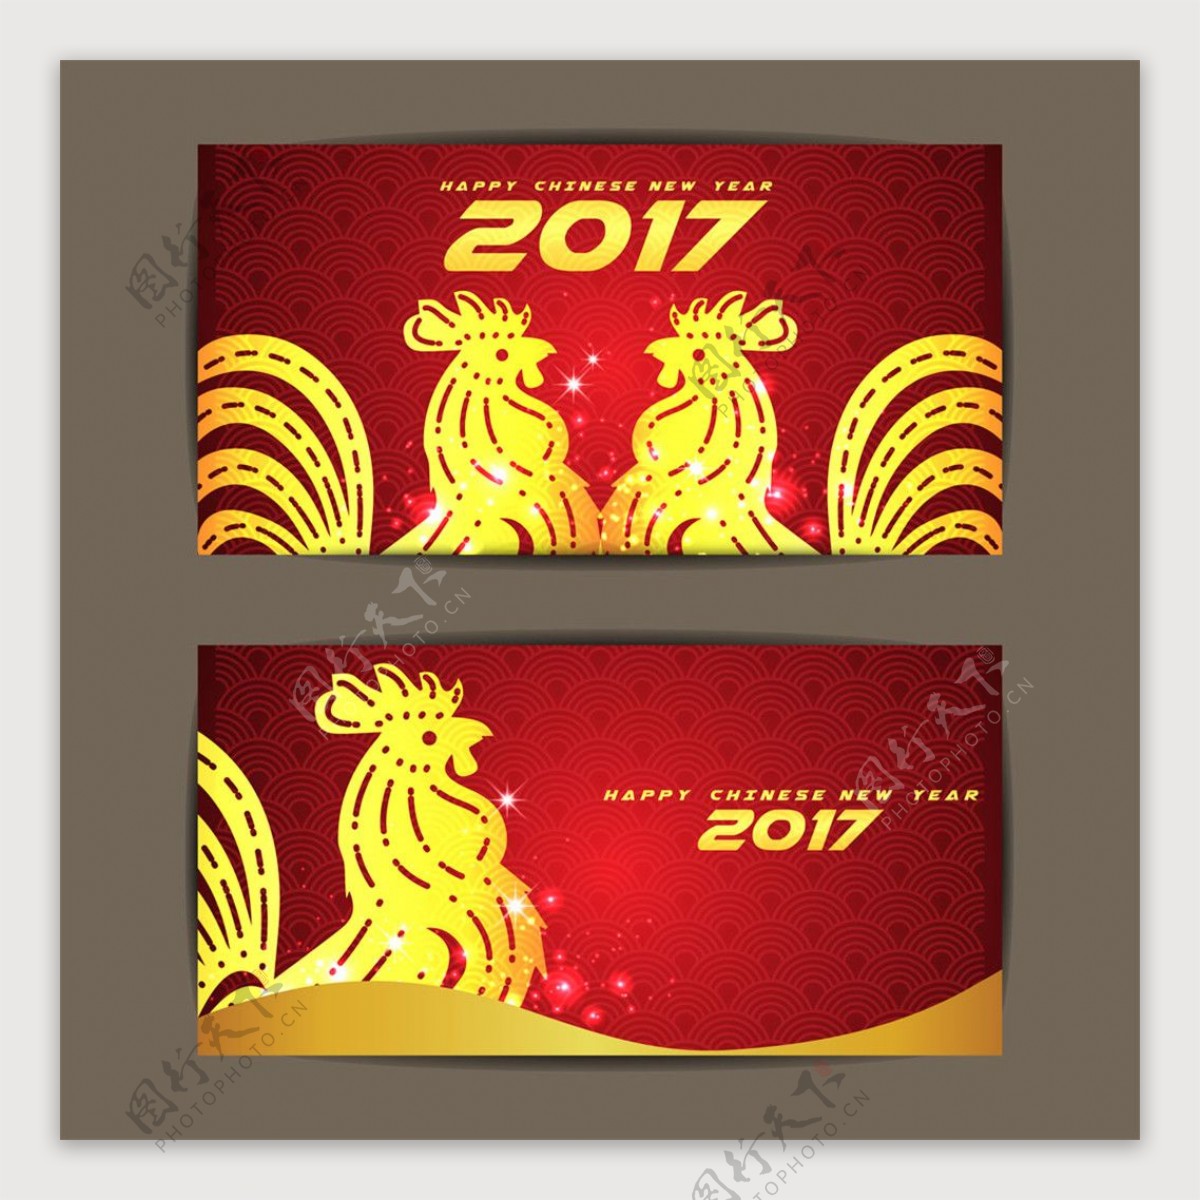 金色公鸡2017年海报图片